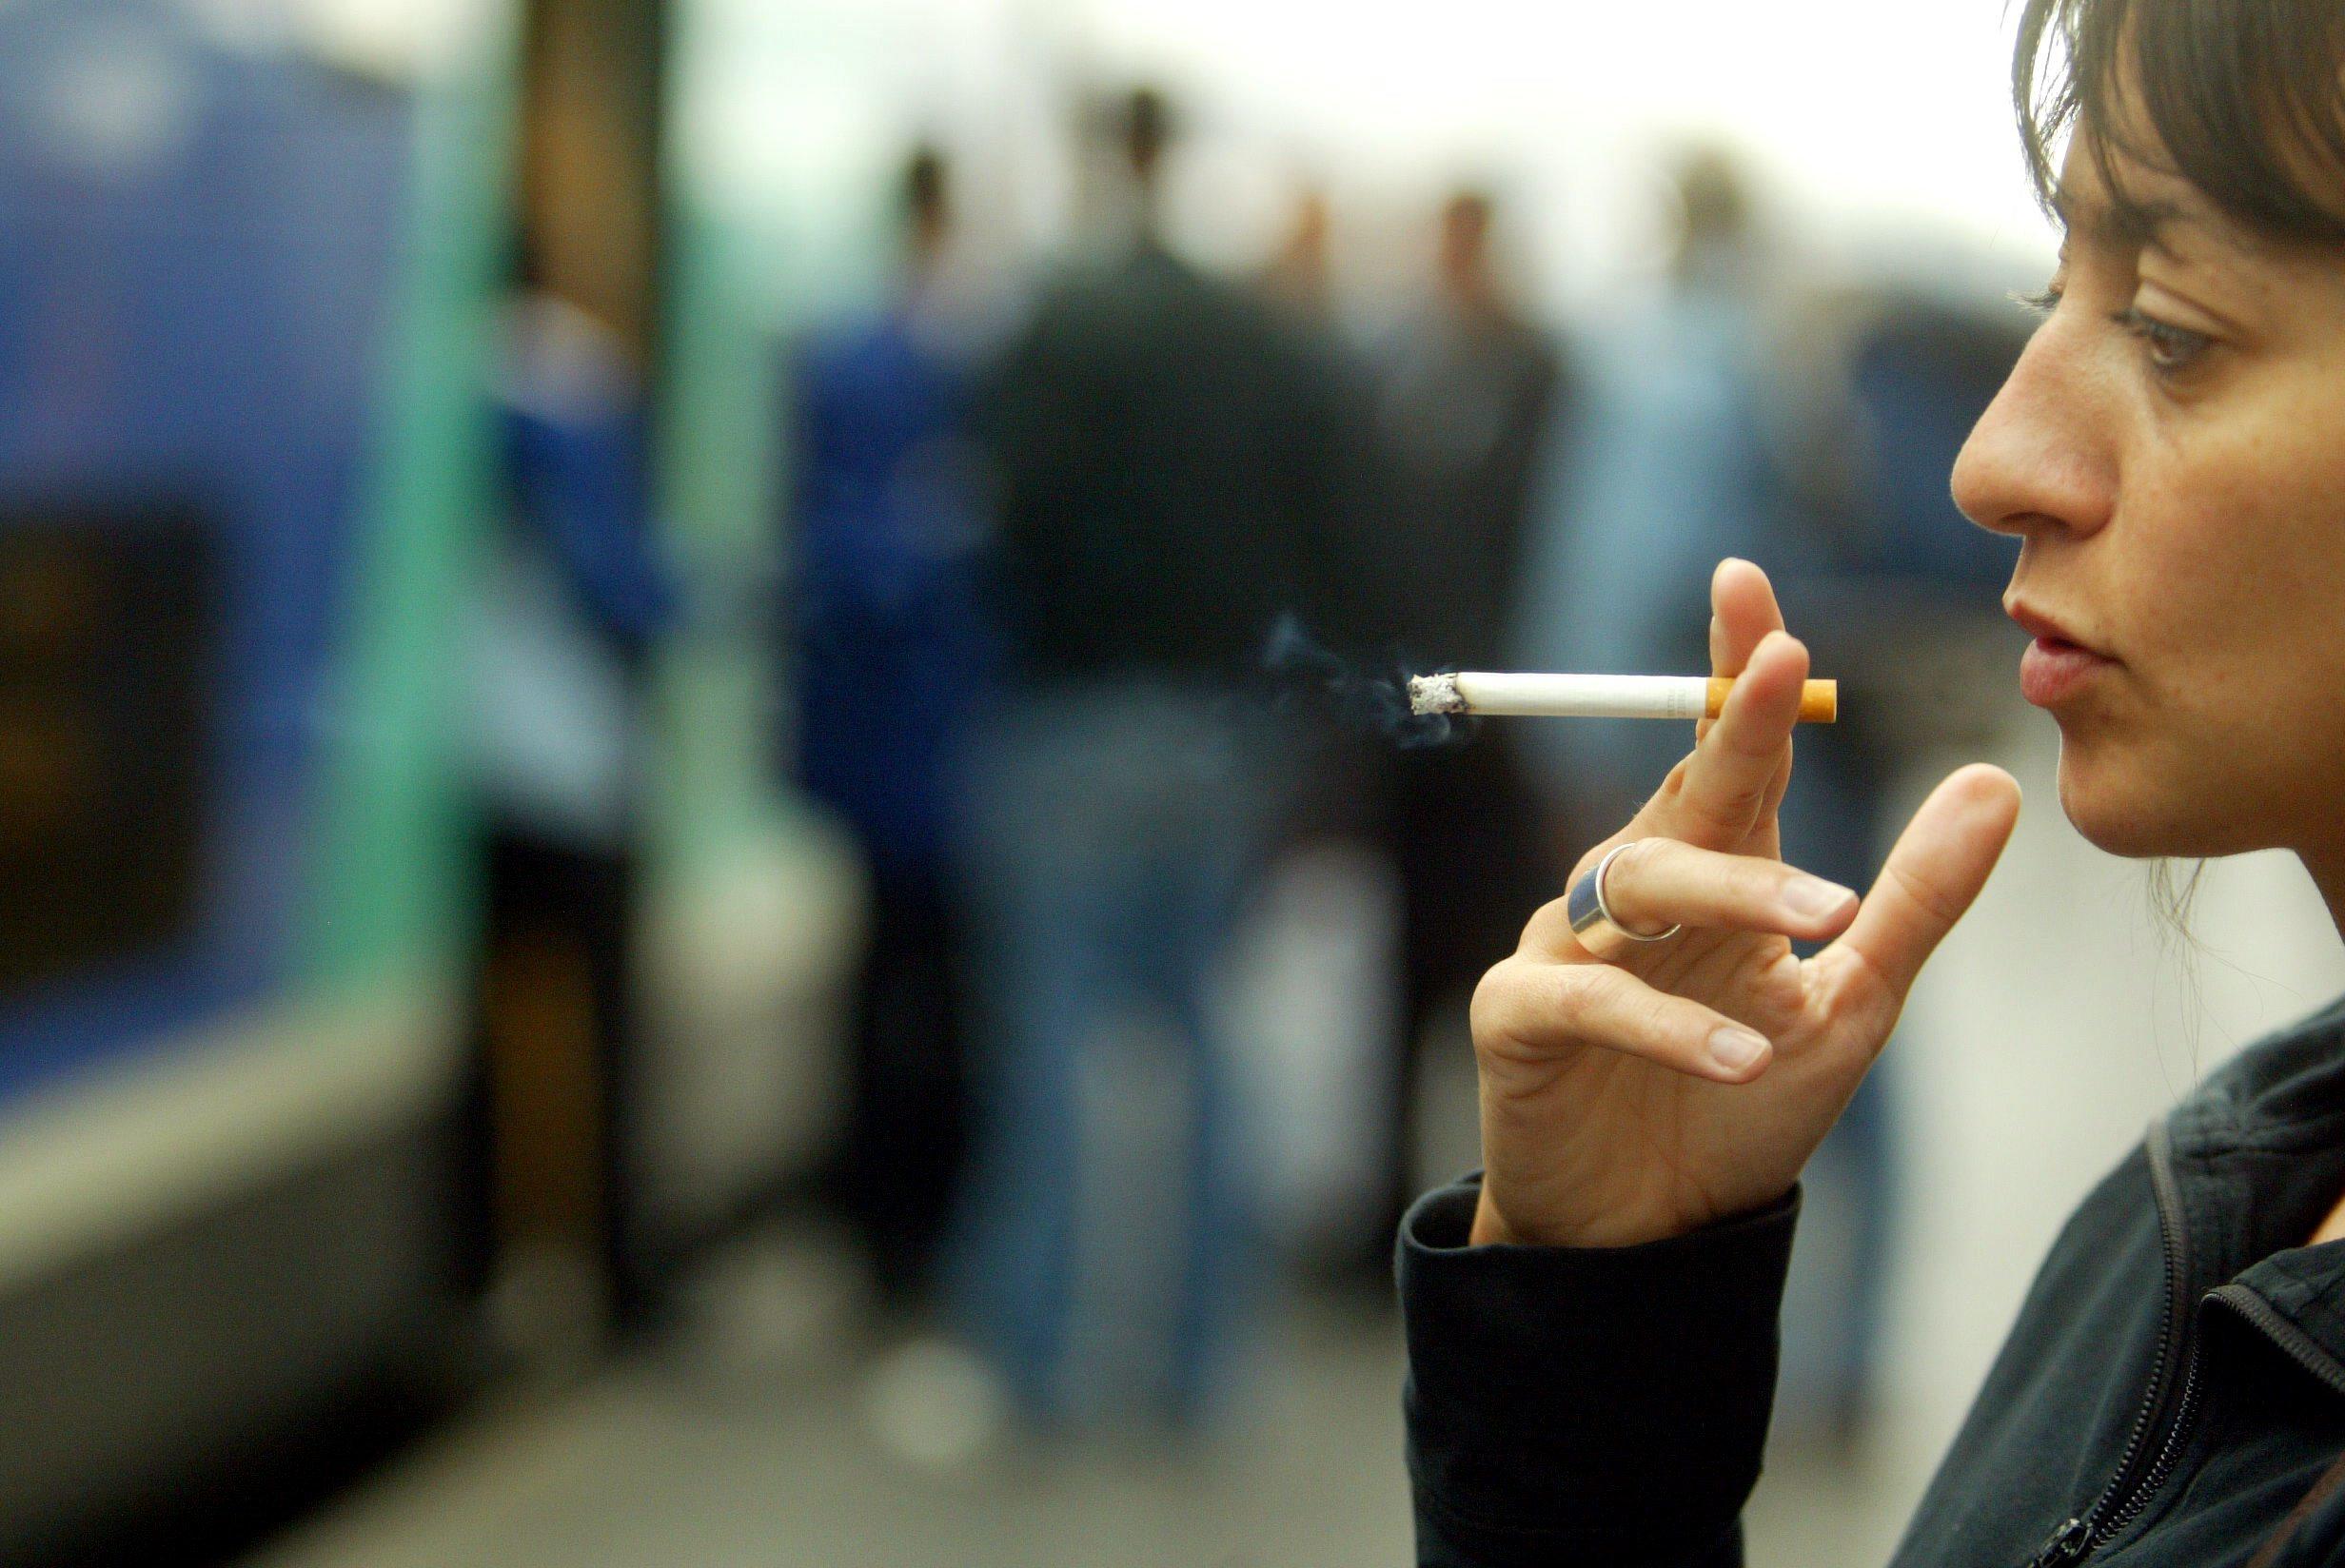 Les voyageurs surpris en train de fumer une cigarette en vitesse devant les portes ou avant que le train ne parte s’exposent à une amende de 68 euros. LP/Fred Dugit